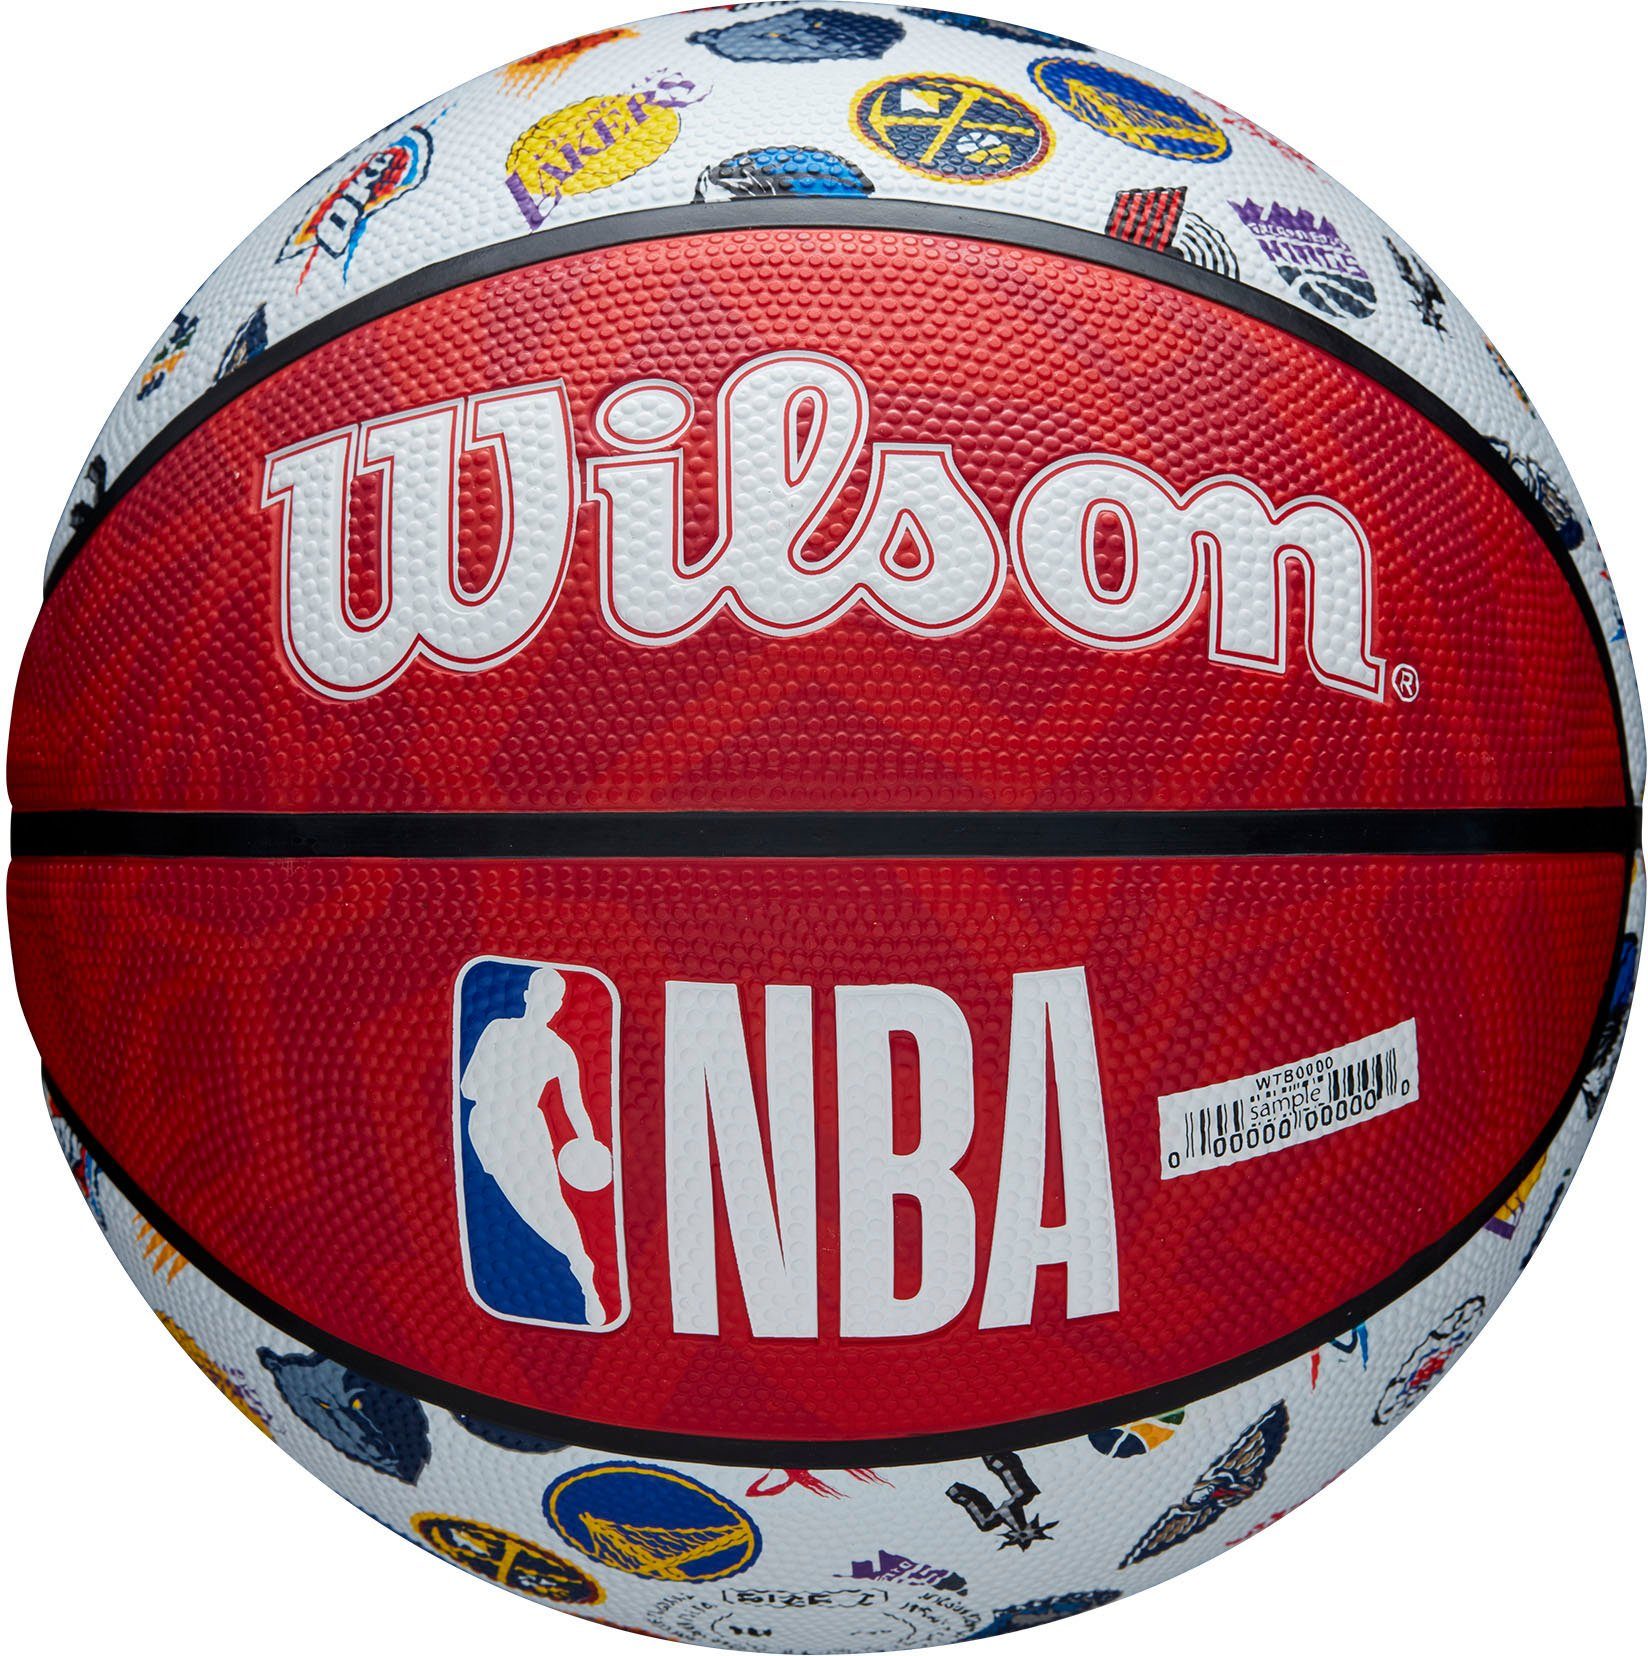 ALL RWB SZ7 Basketball TEAM XTREM Wilson toys NBA & BSKT sports